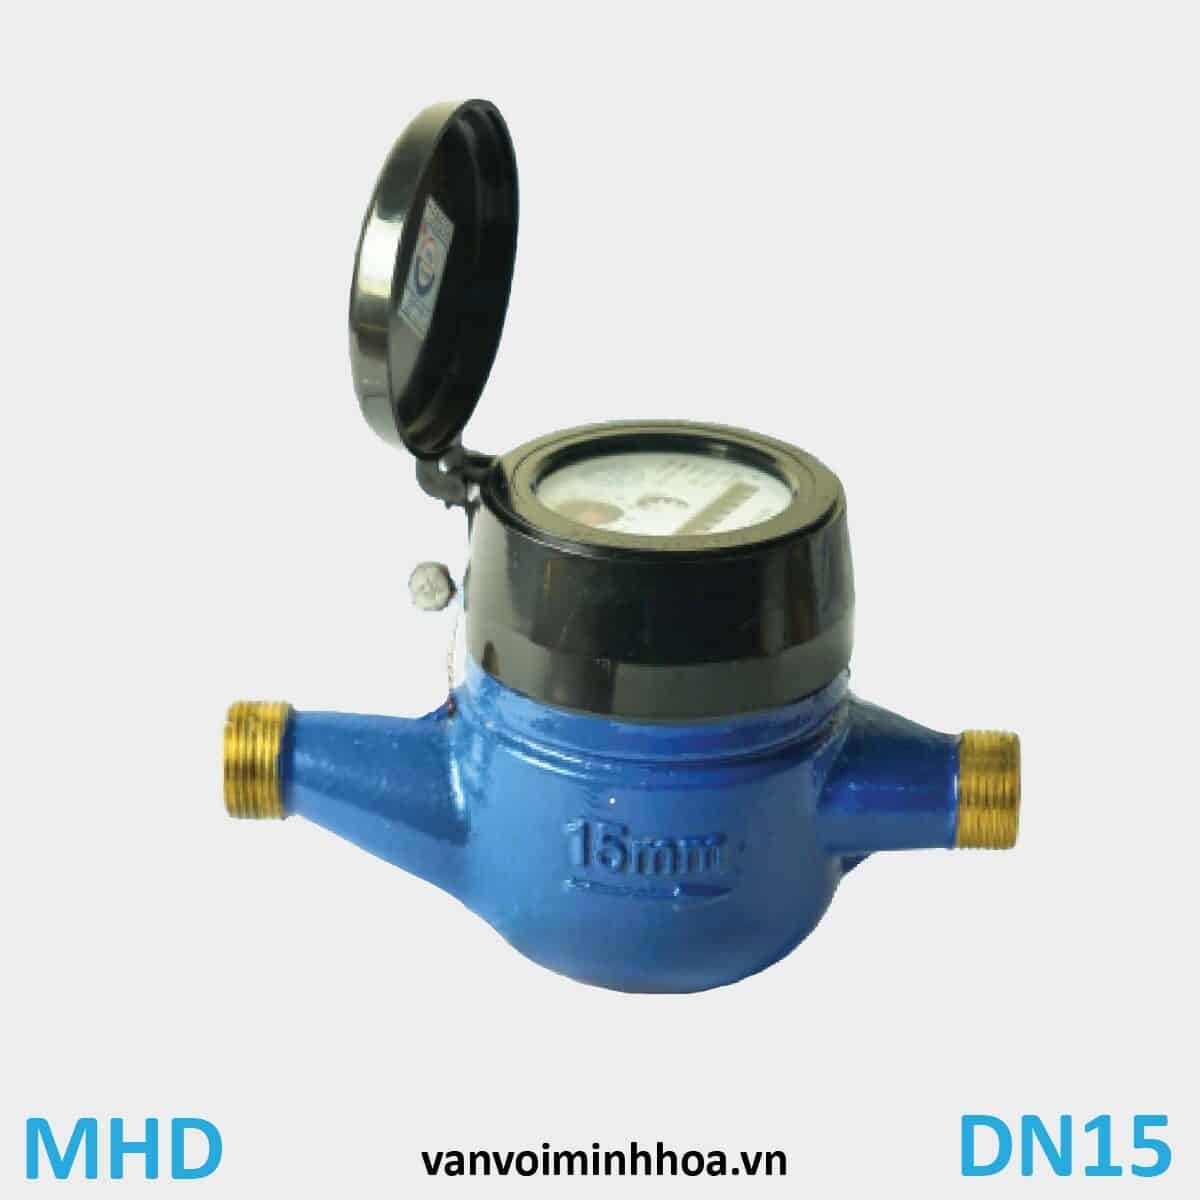 Đồng hồ nước Mình Hòa MHD phi 21 DN15 Thân đồng